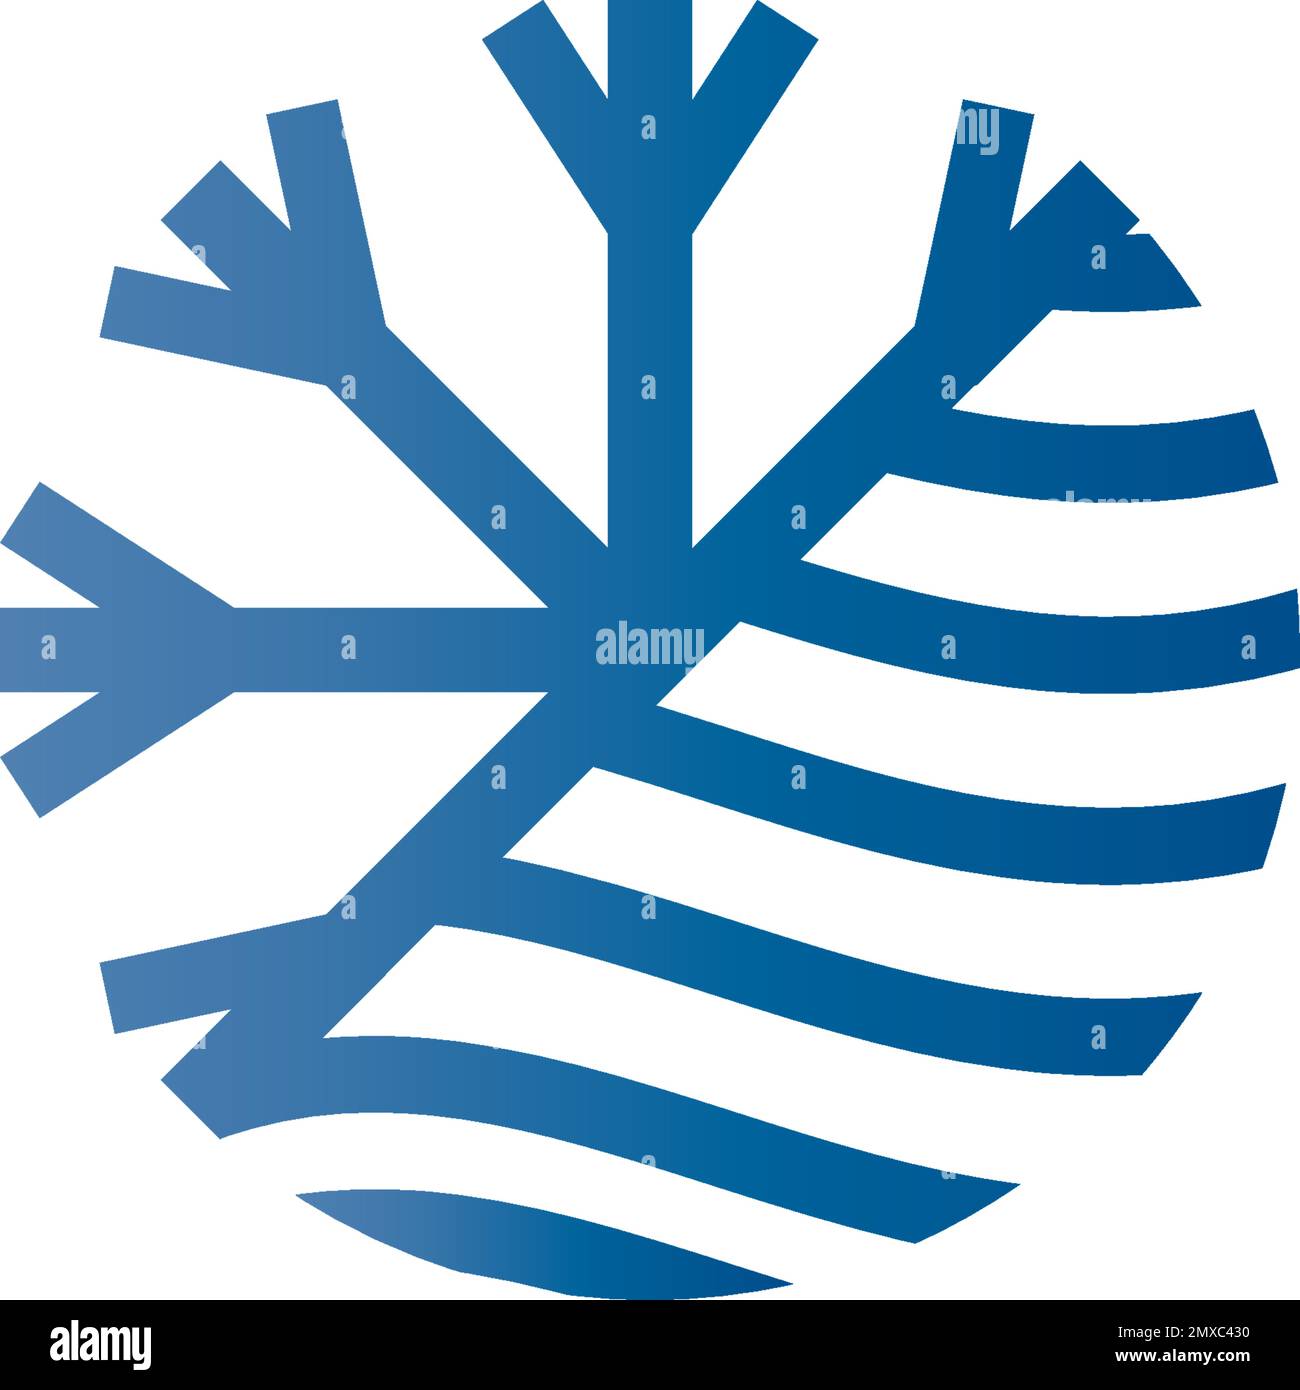 Disegno del logo di illustrazione vettoriale dell'icona del fiocco di neve. Illustrazione Vettoriale